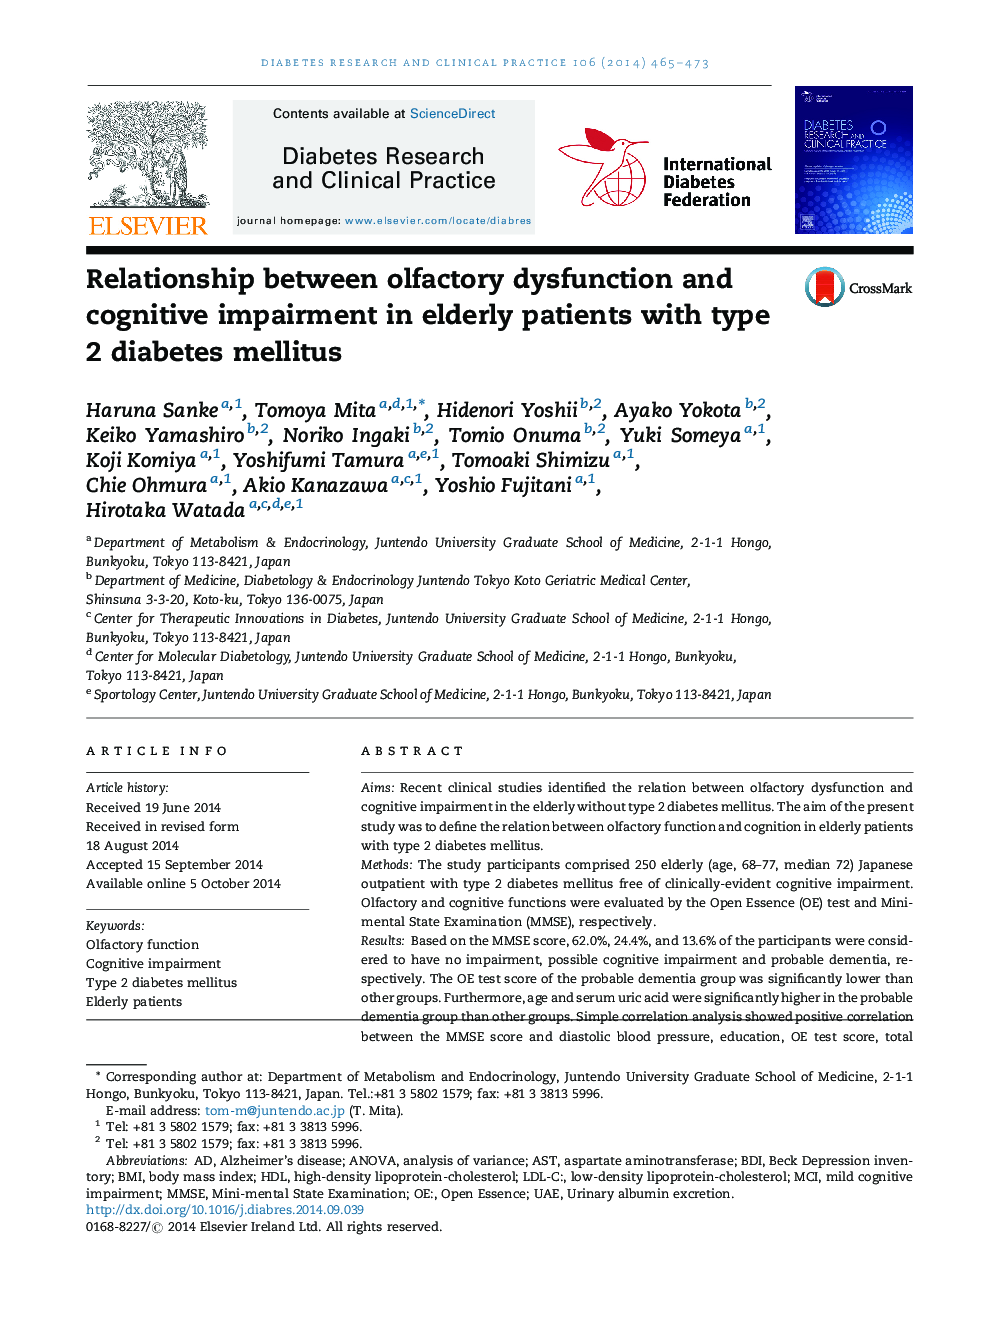 ارتباط بین اختلالات بویایی و اختلال شناختی در سالمندان مبتلا به دیابت نوع 2 